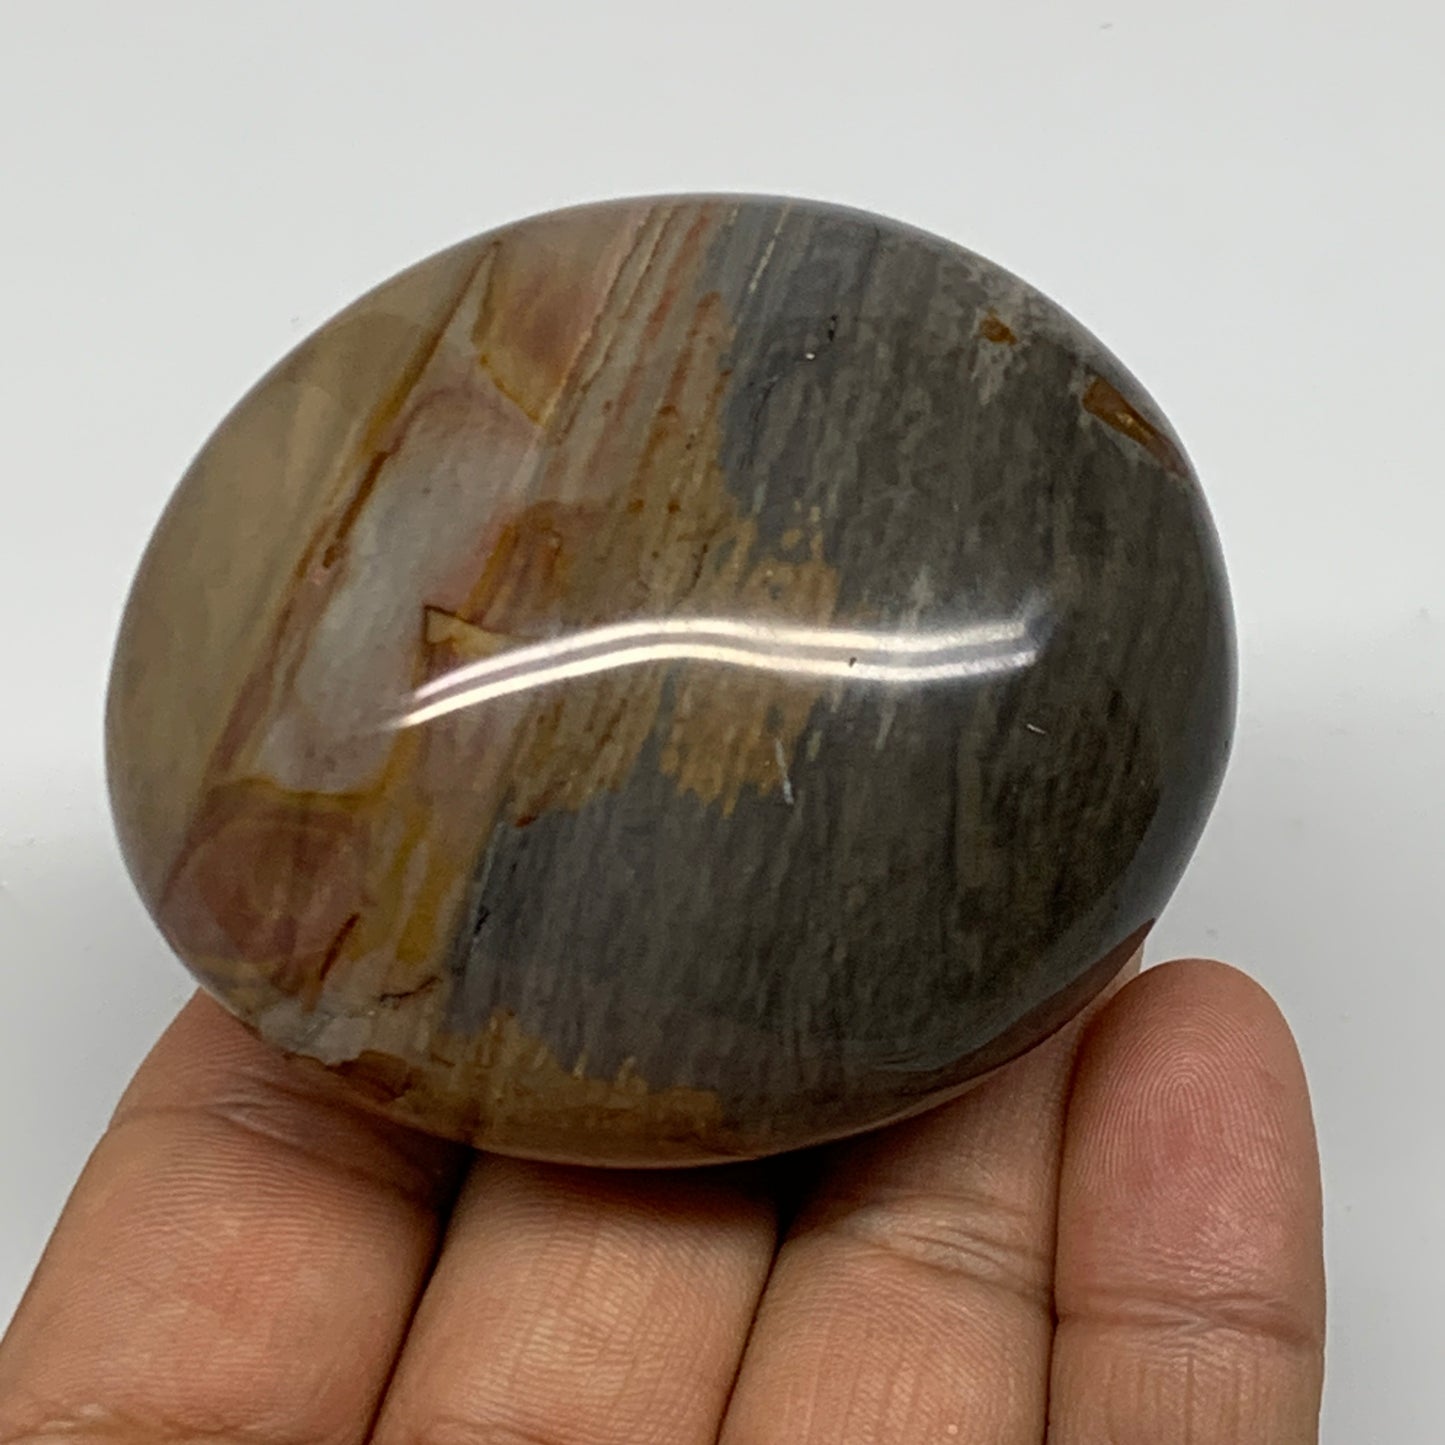 158.3g, 2.5"x2.2"x1.4" Polychrome Jasper Palm-Stone Reiki @Madagascar, B24517